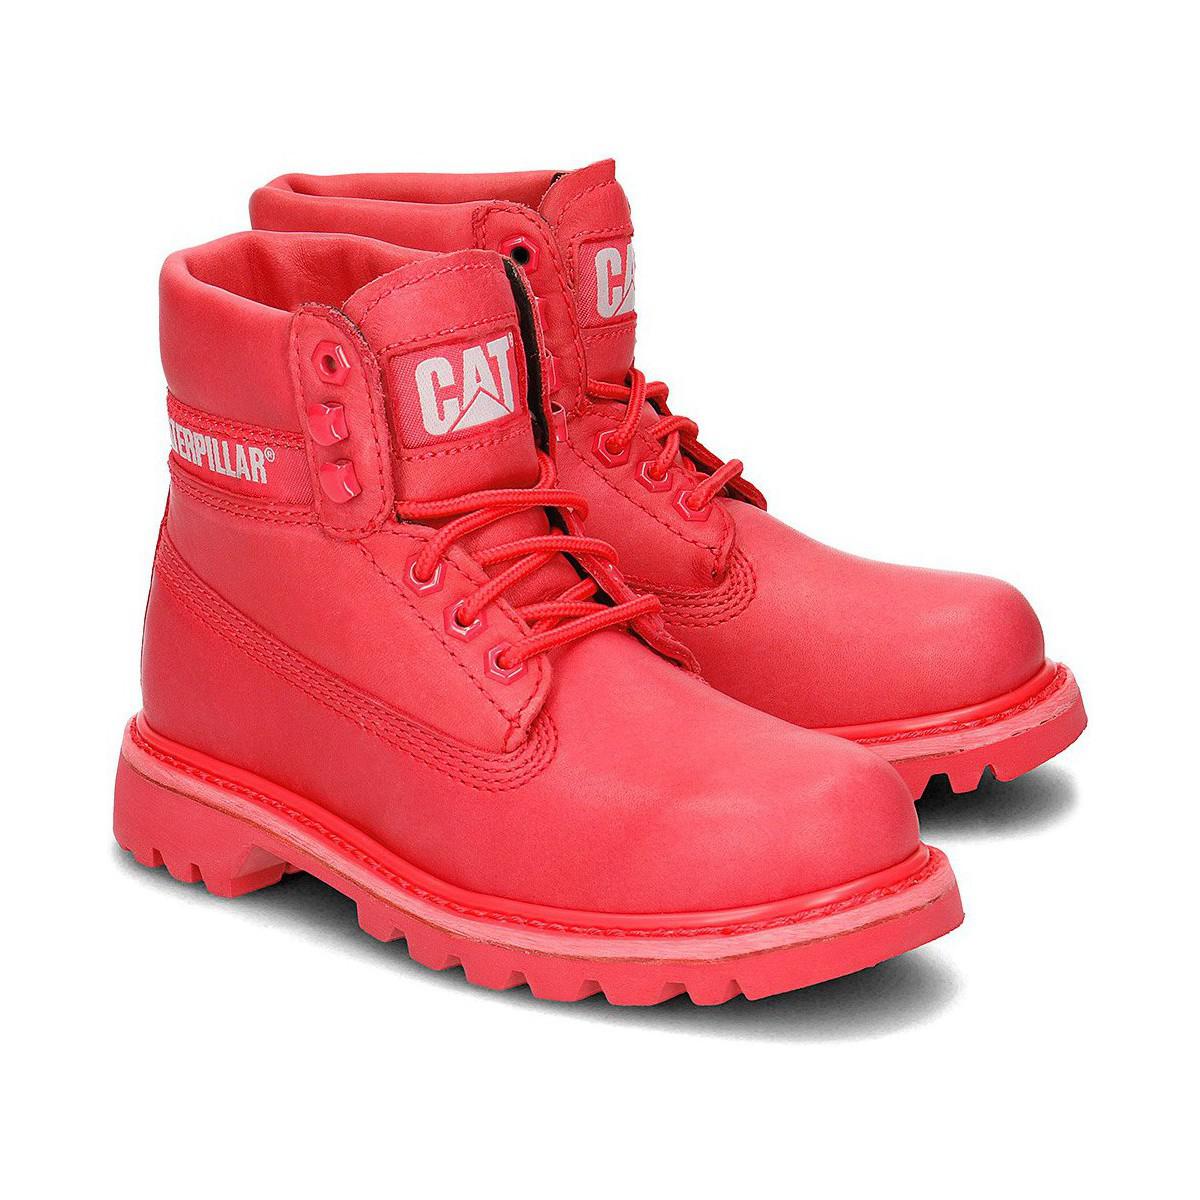 red caterpillar boots